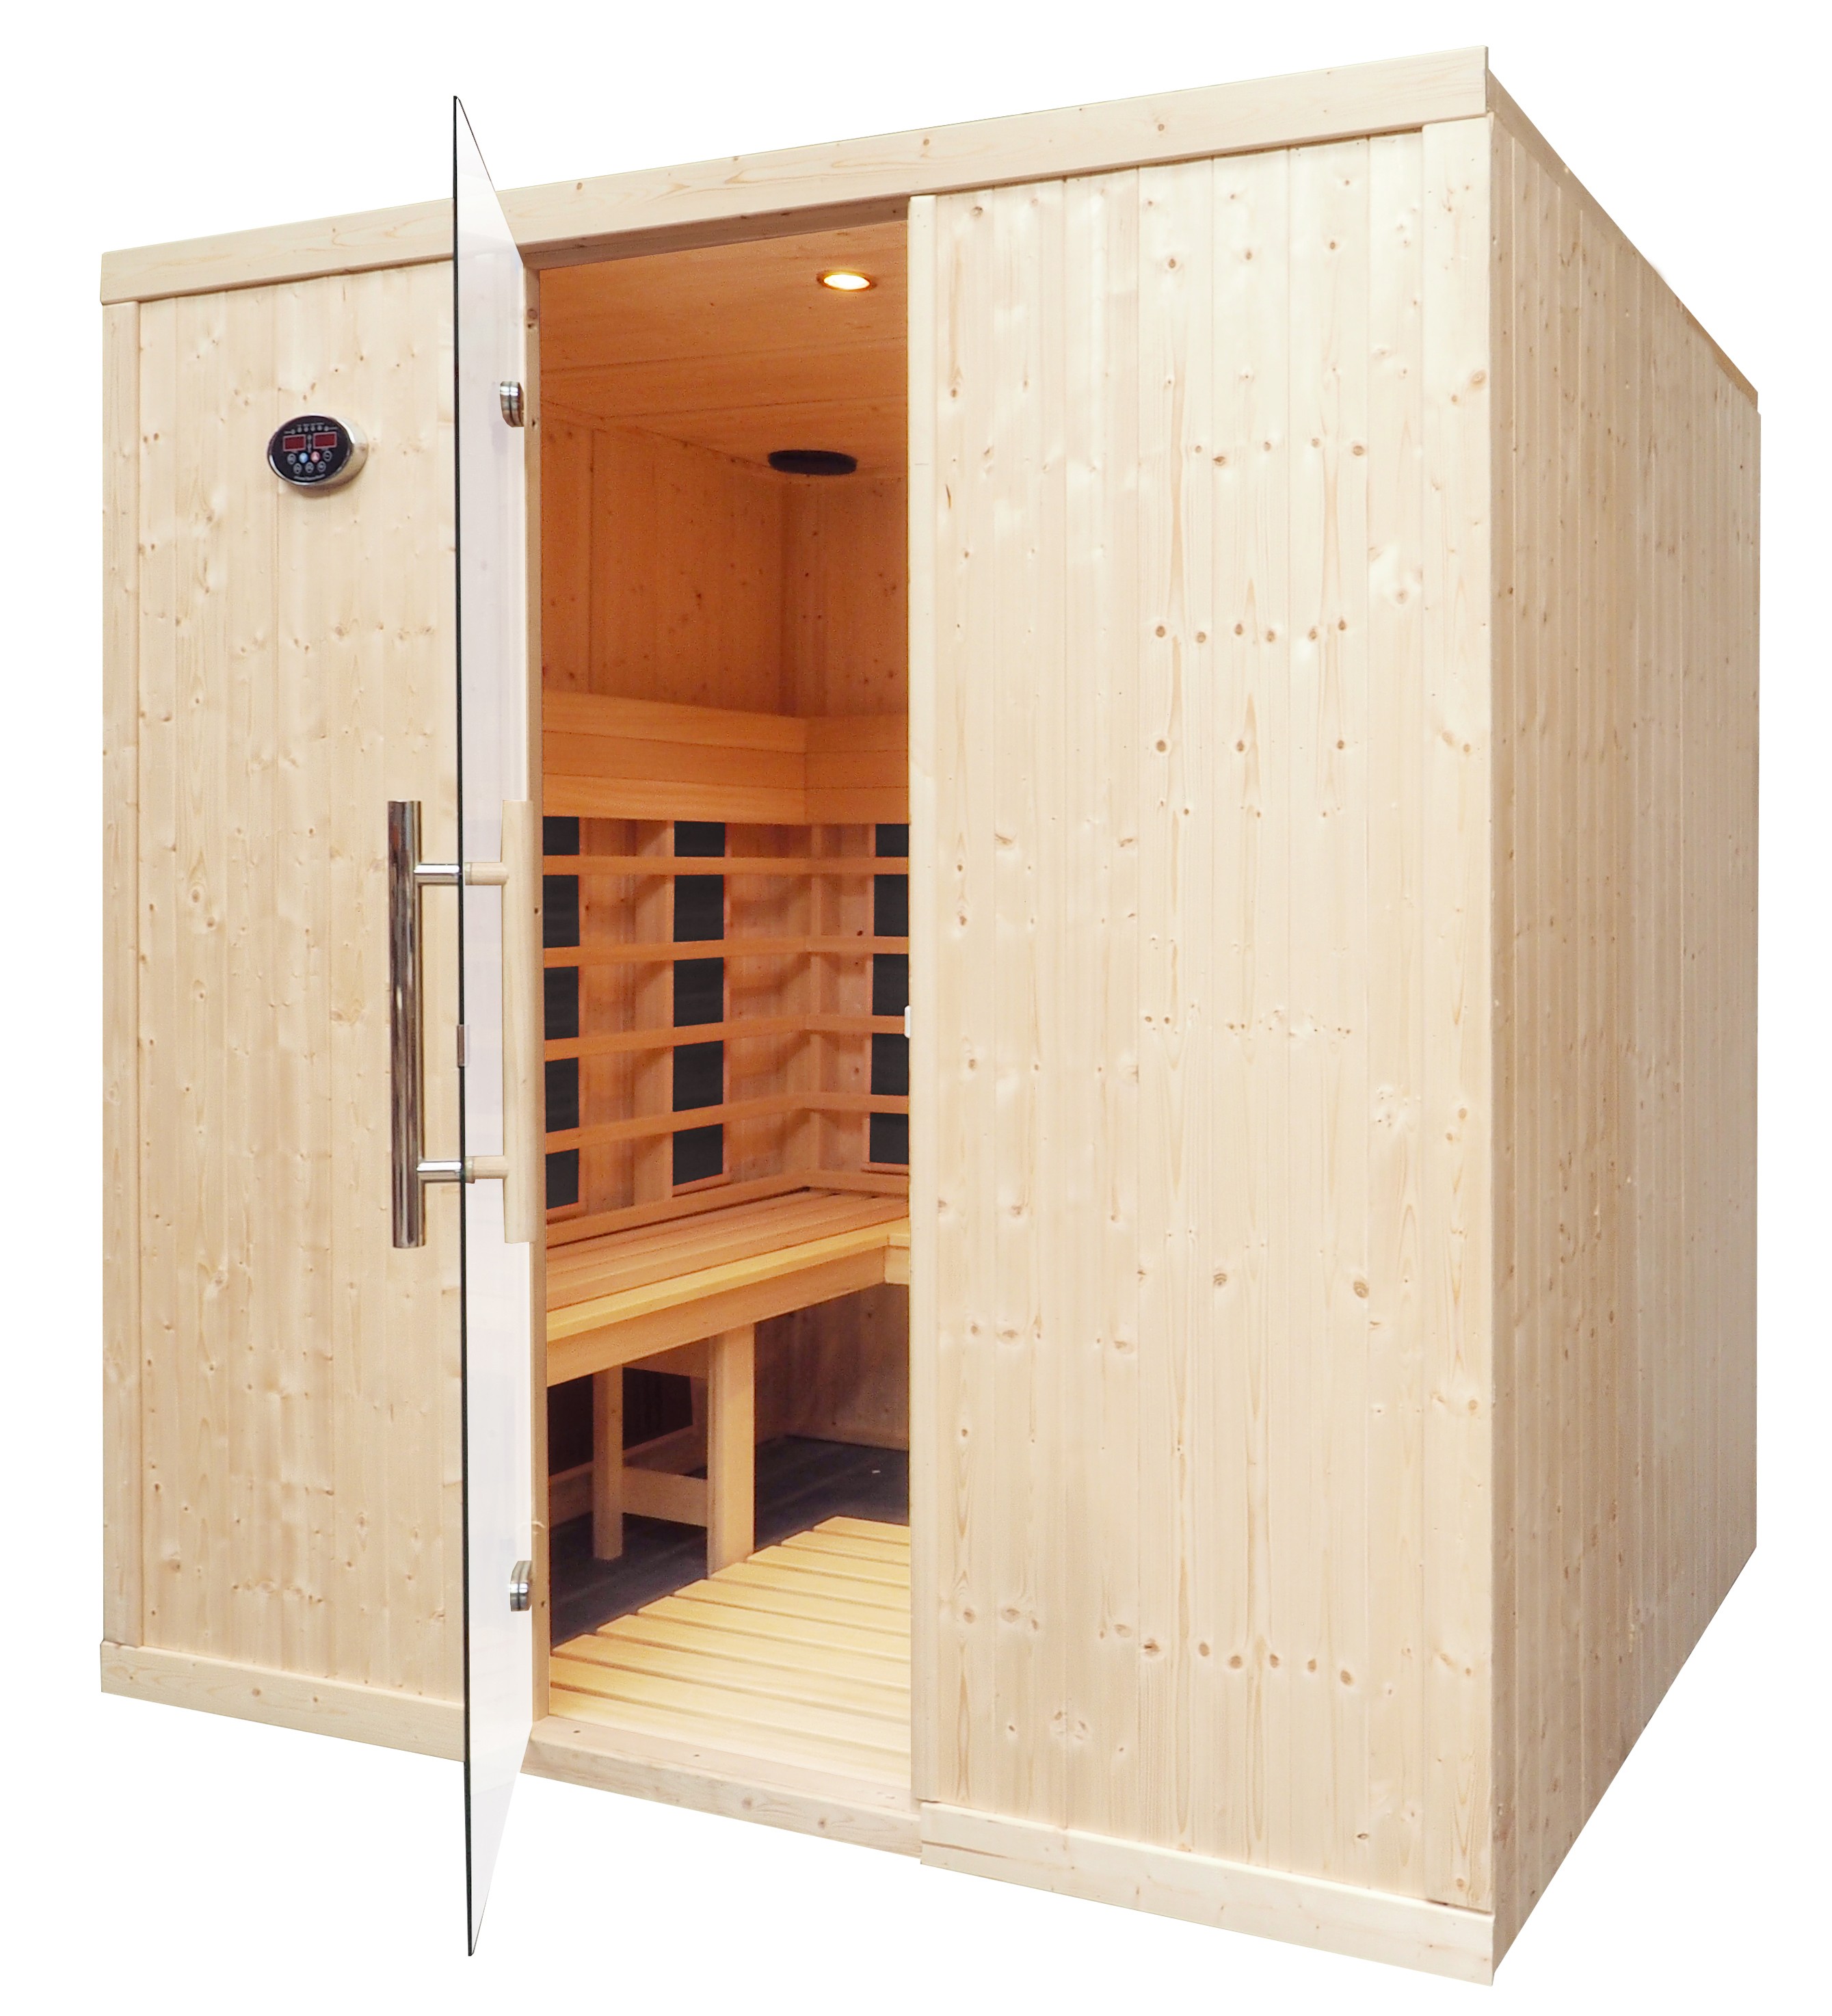 Cabina de sauna infrarrojos - 4 personas - bancos en L - IR2530L